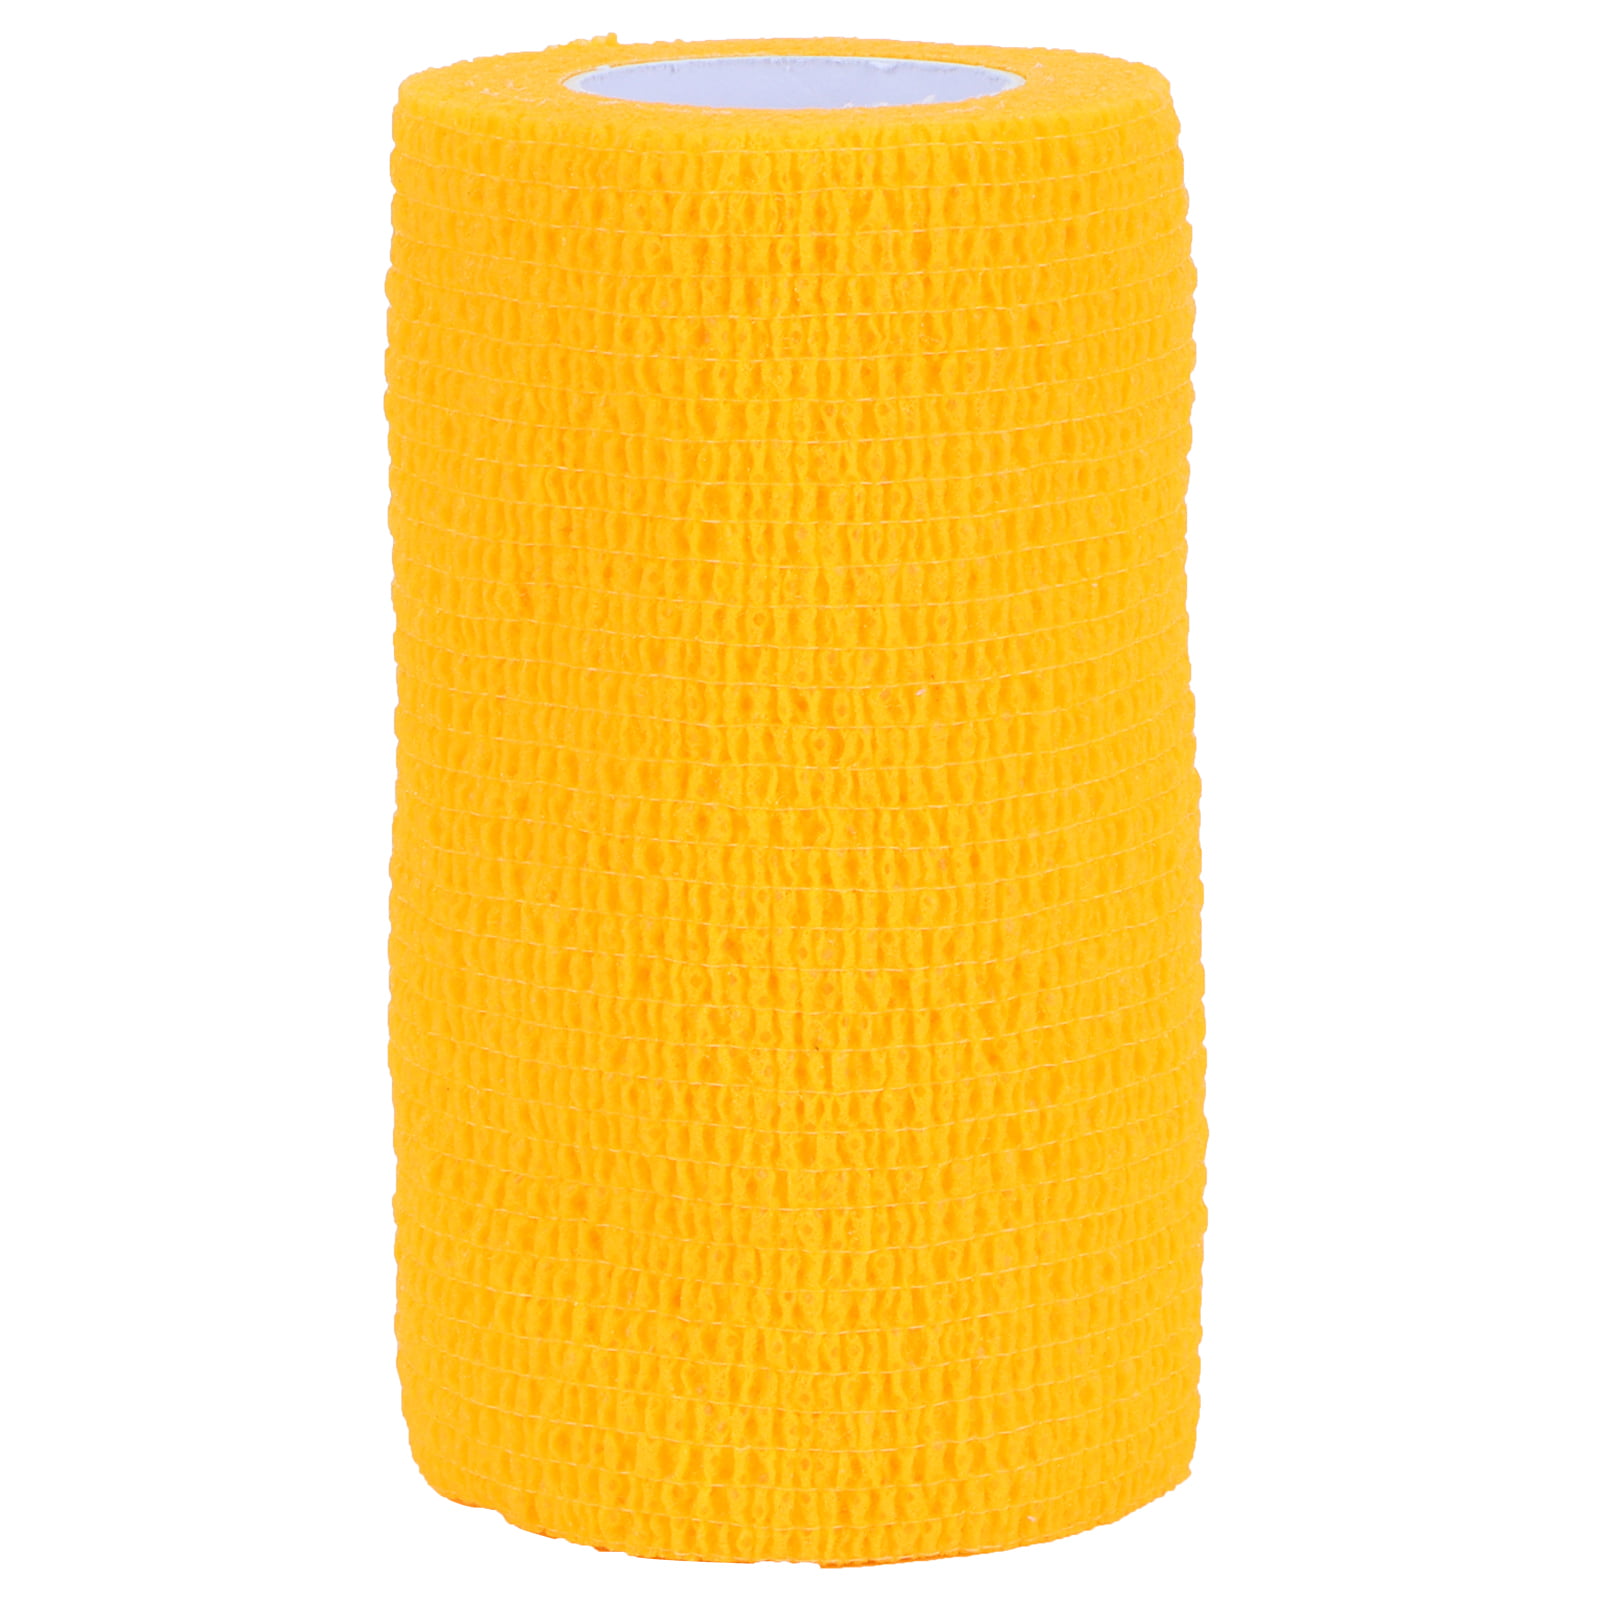 Cohesive Yellow bandages 